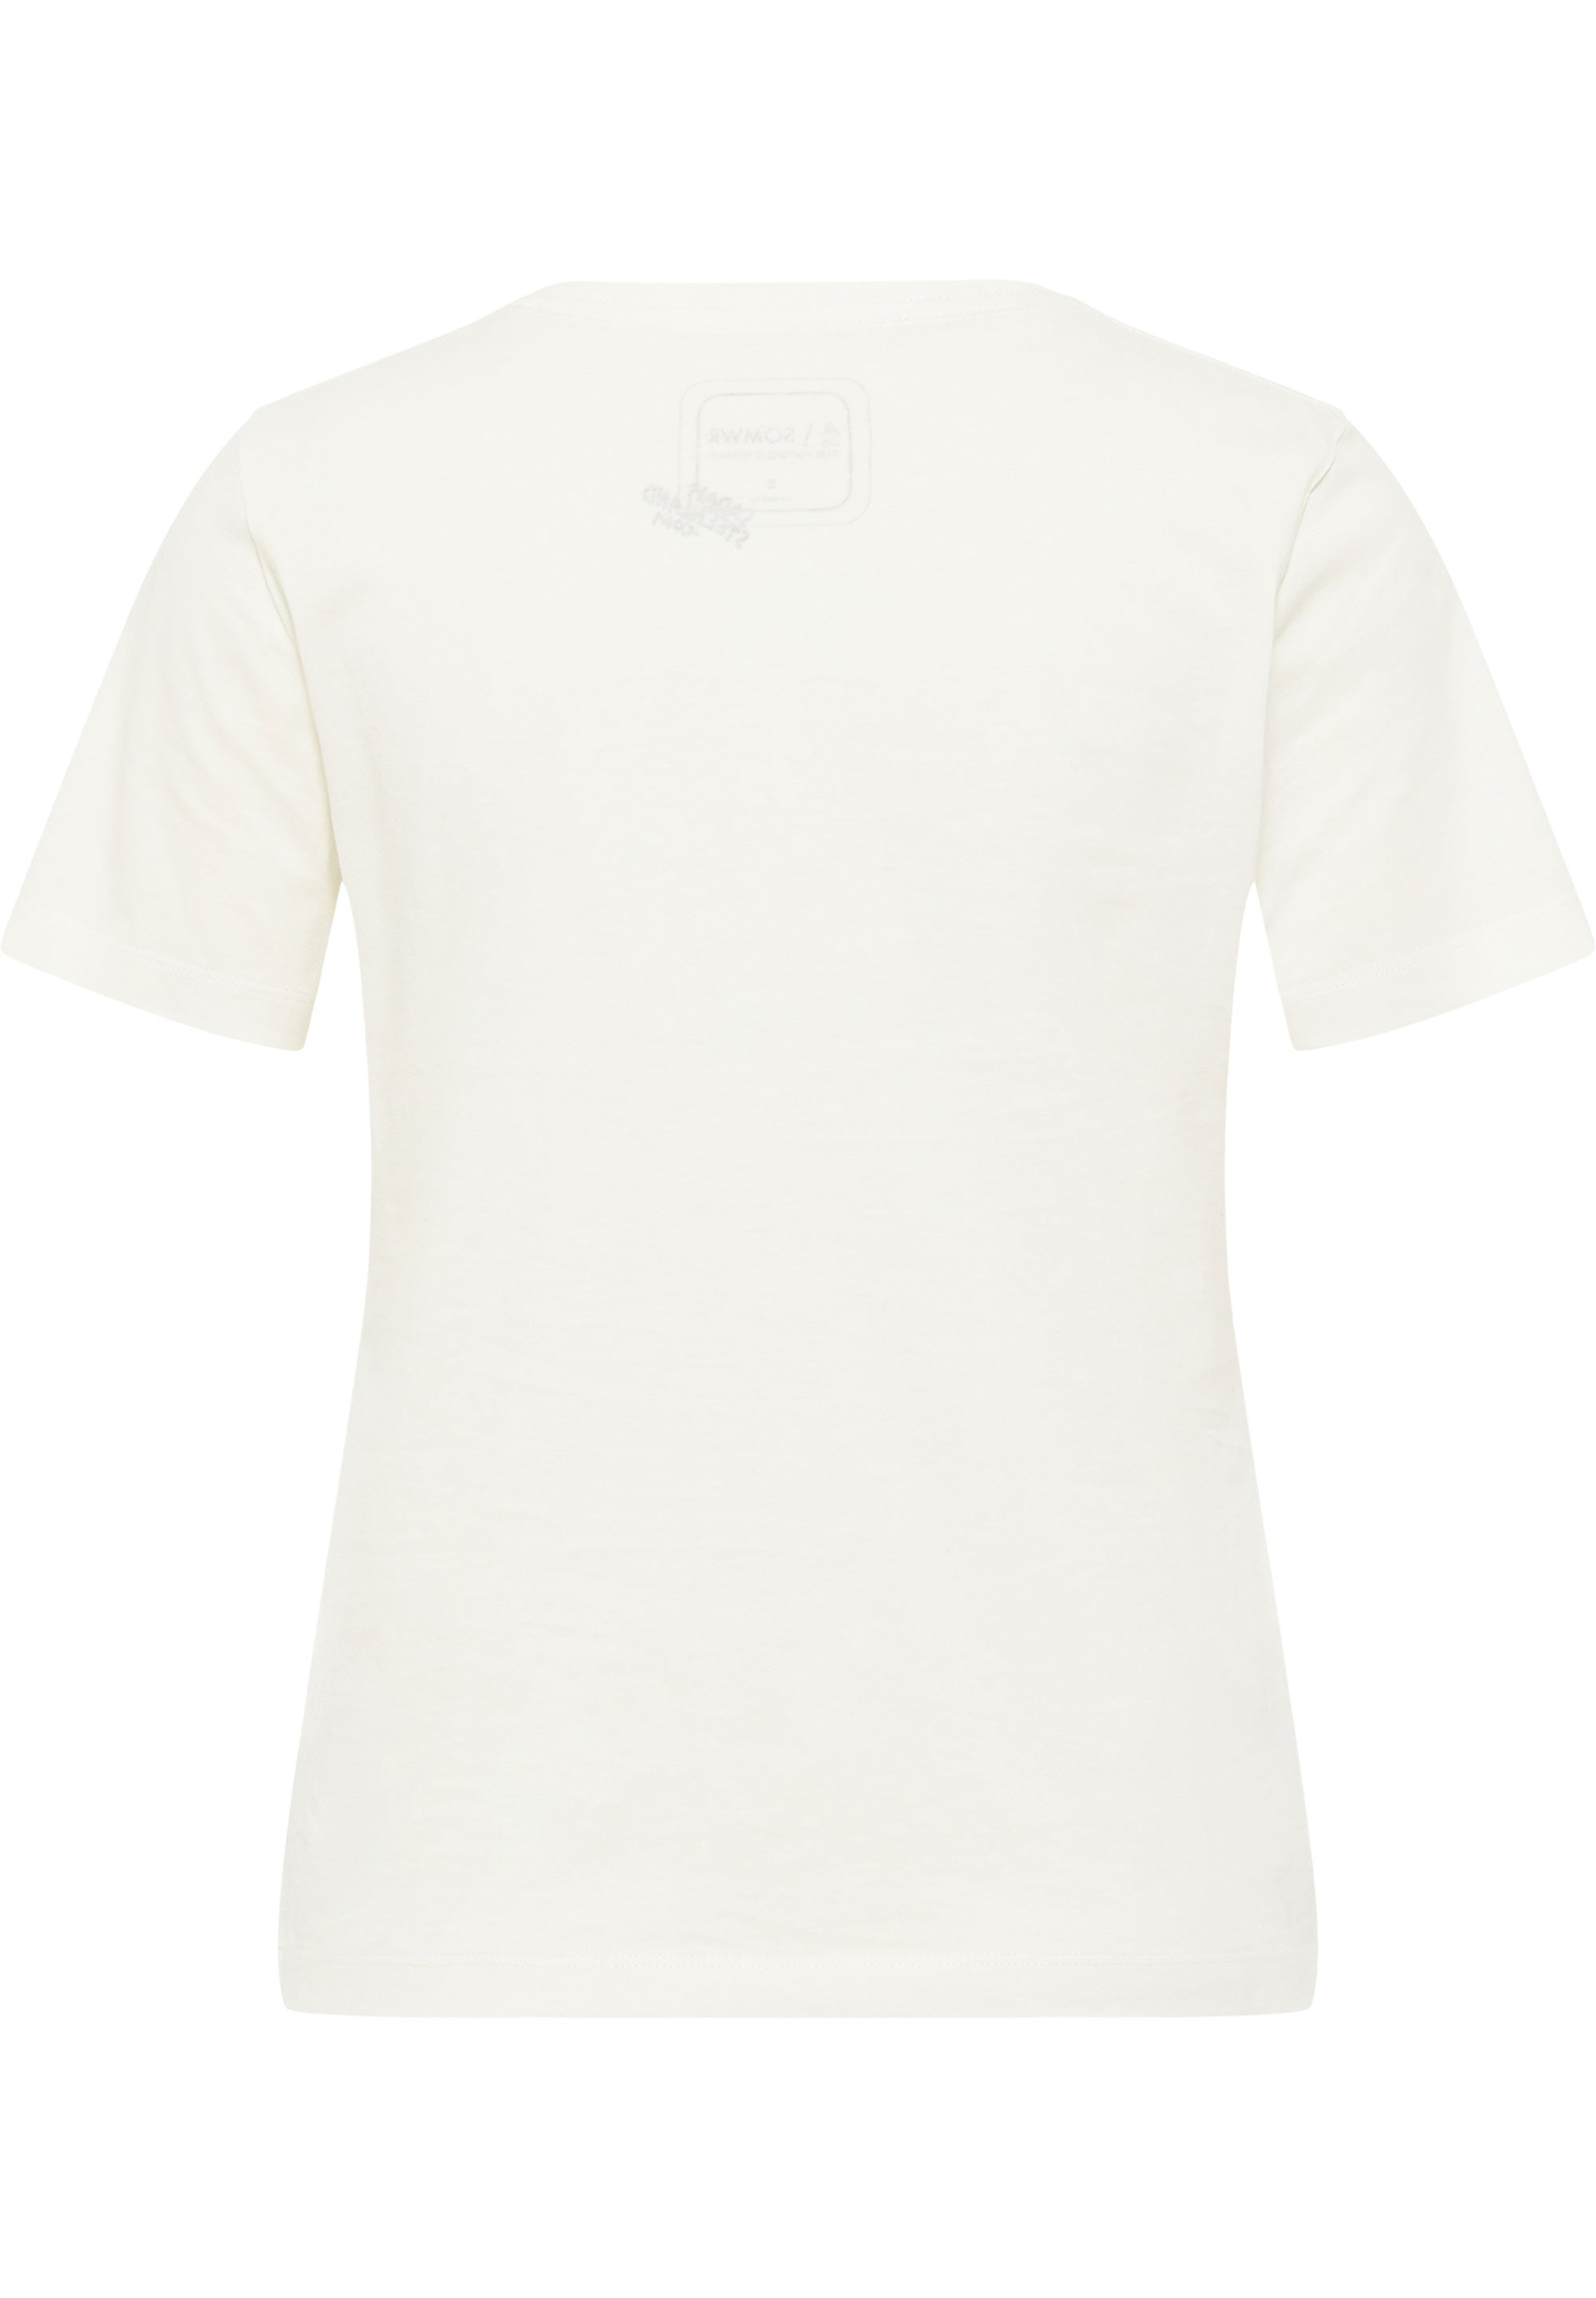 SOMWR FUGITIVE TEE T-Shirt UND006